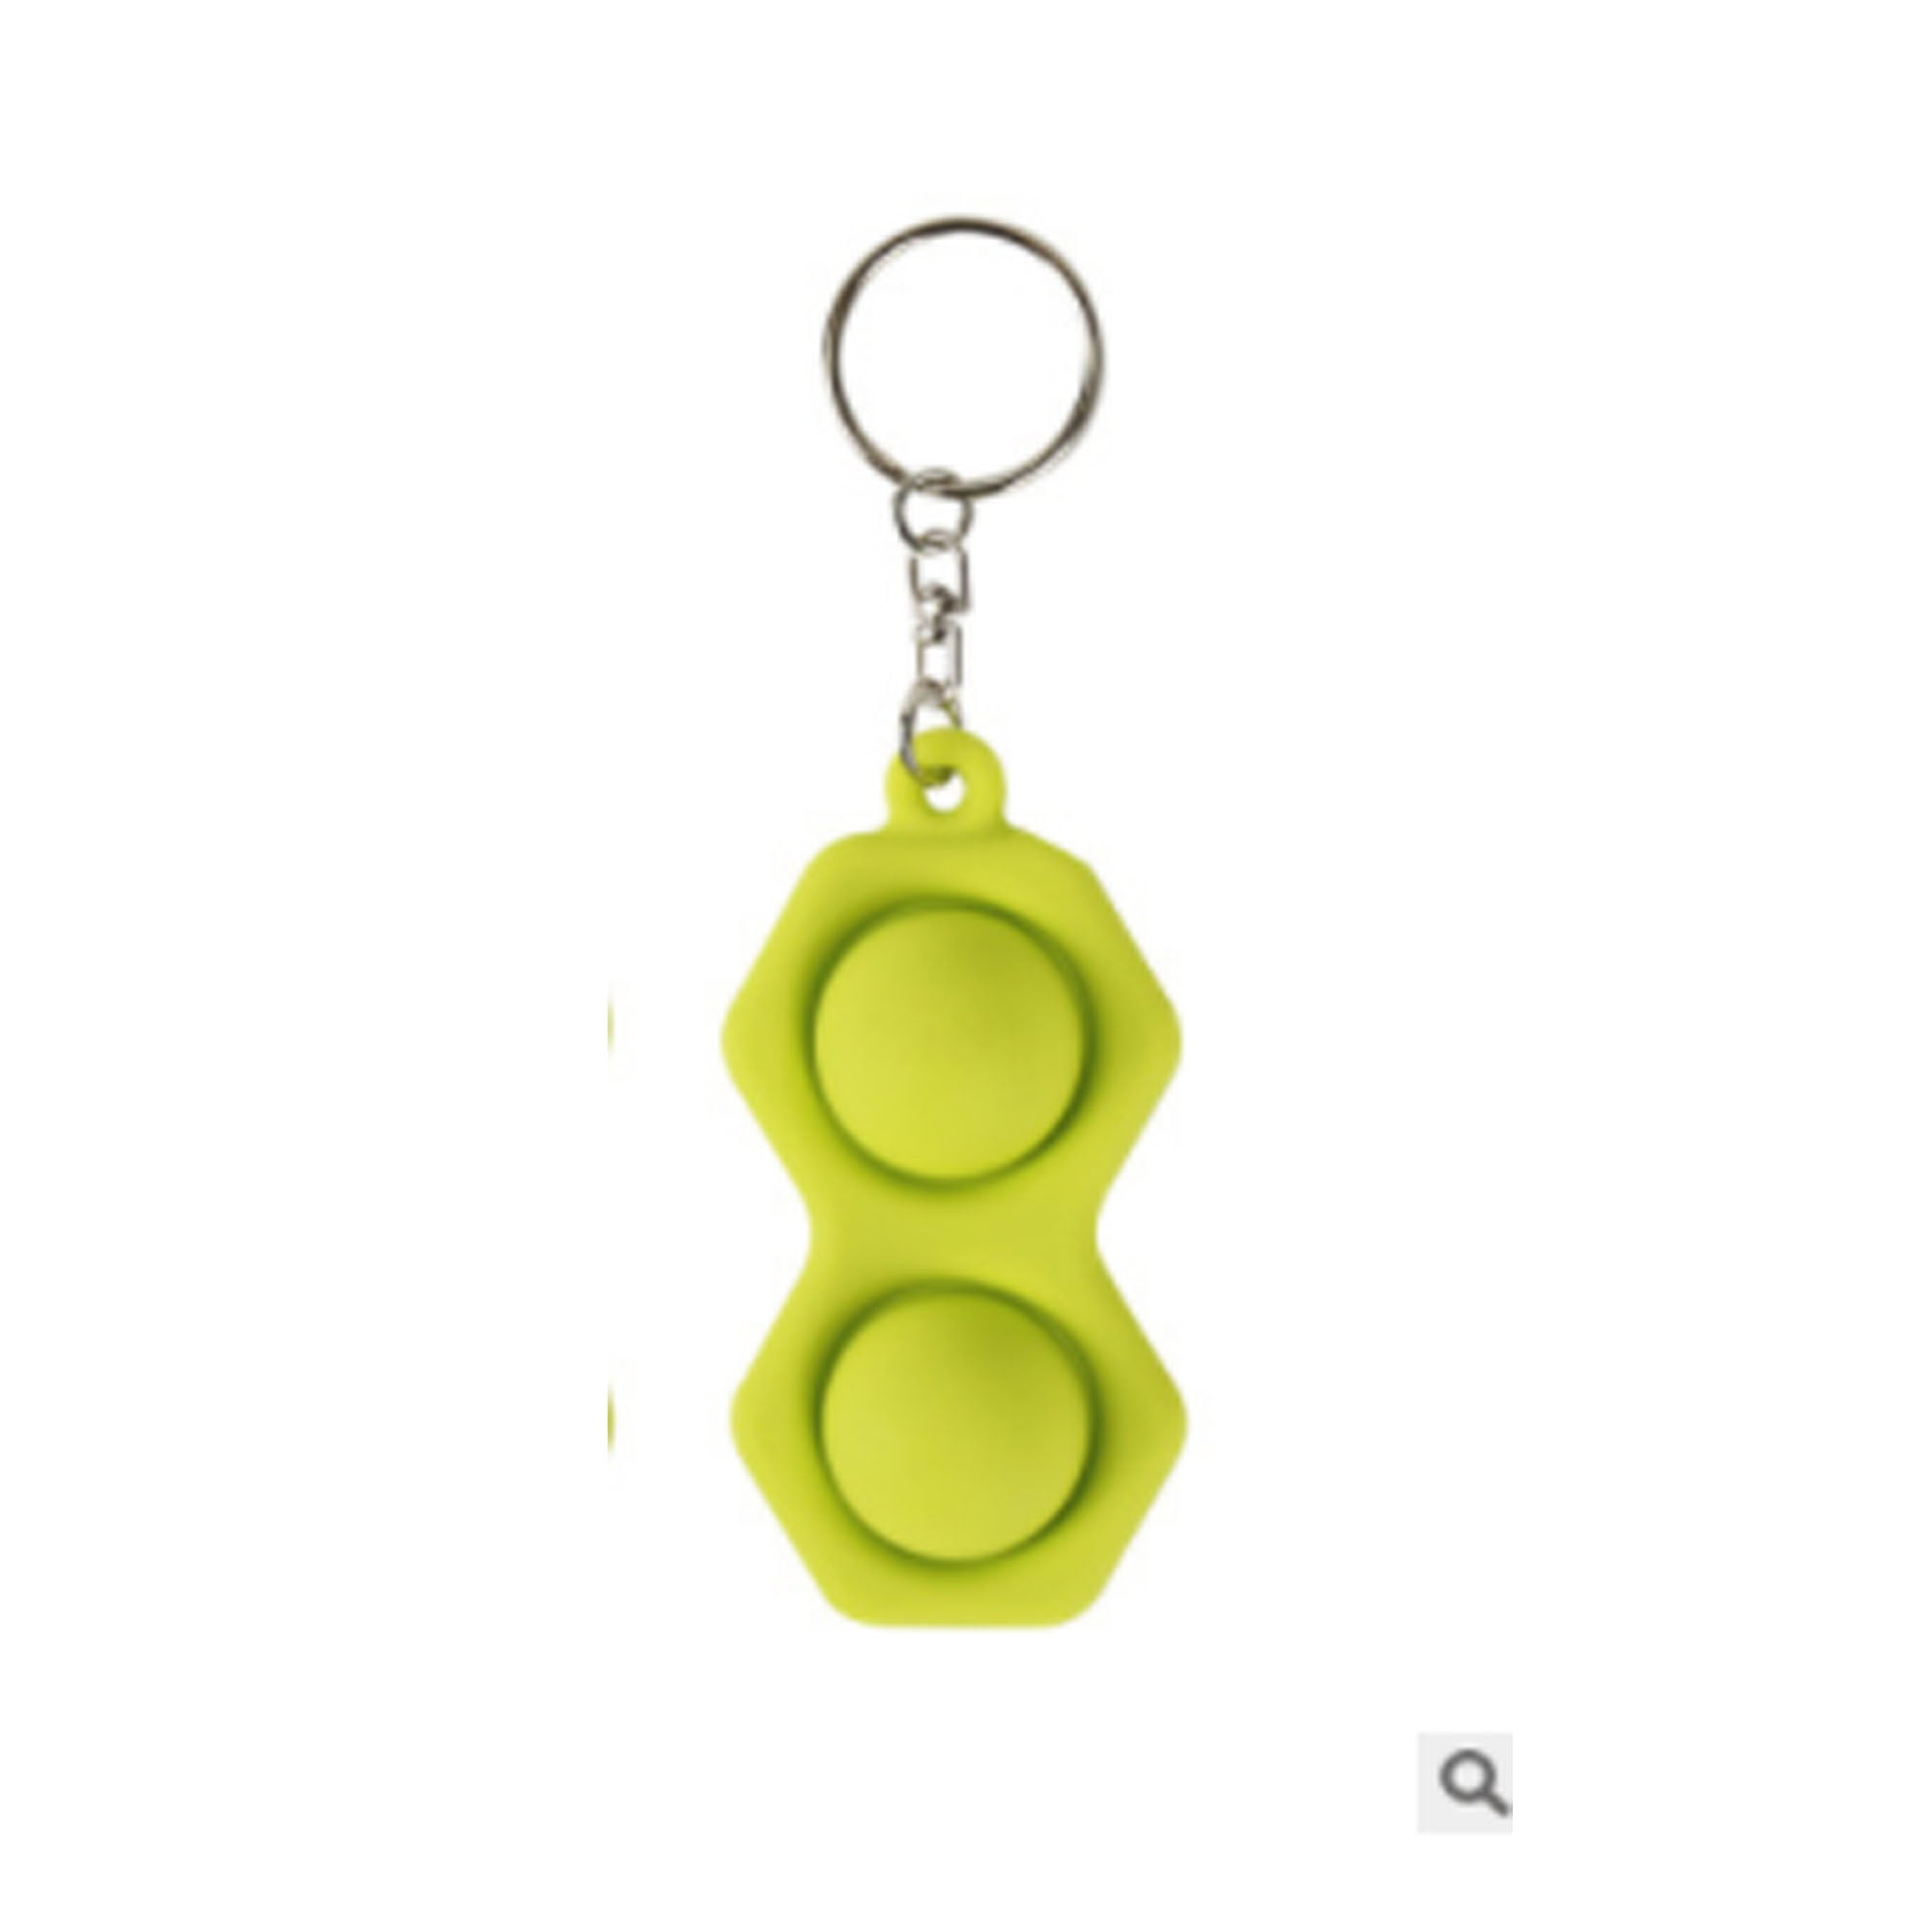 Details about   1/2PCS Mini Push it Bubble Simple Dimple Fidget Toy Stress Relief Toys Keychain 